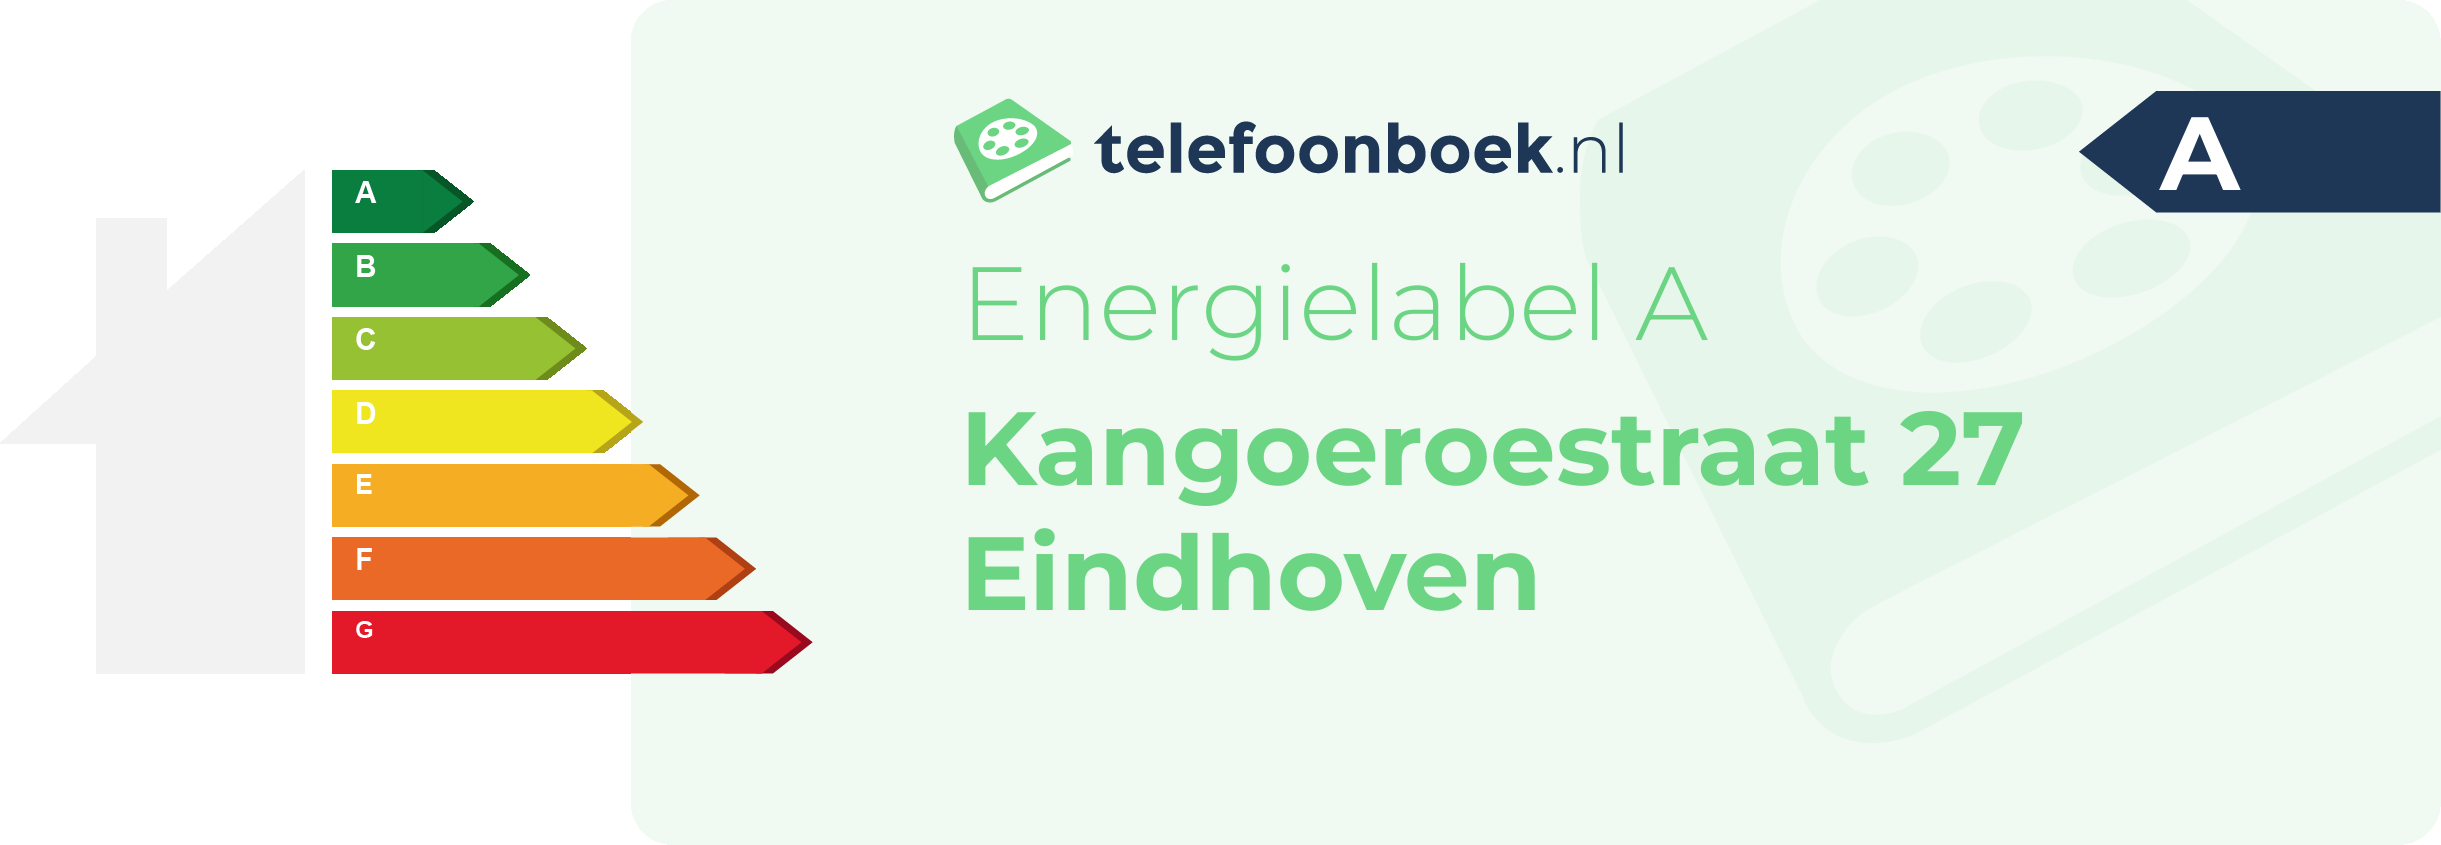 Energielabel Kangoeroestraat 27 Eindhoven